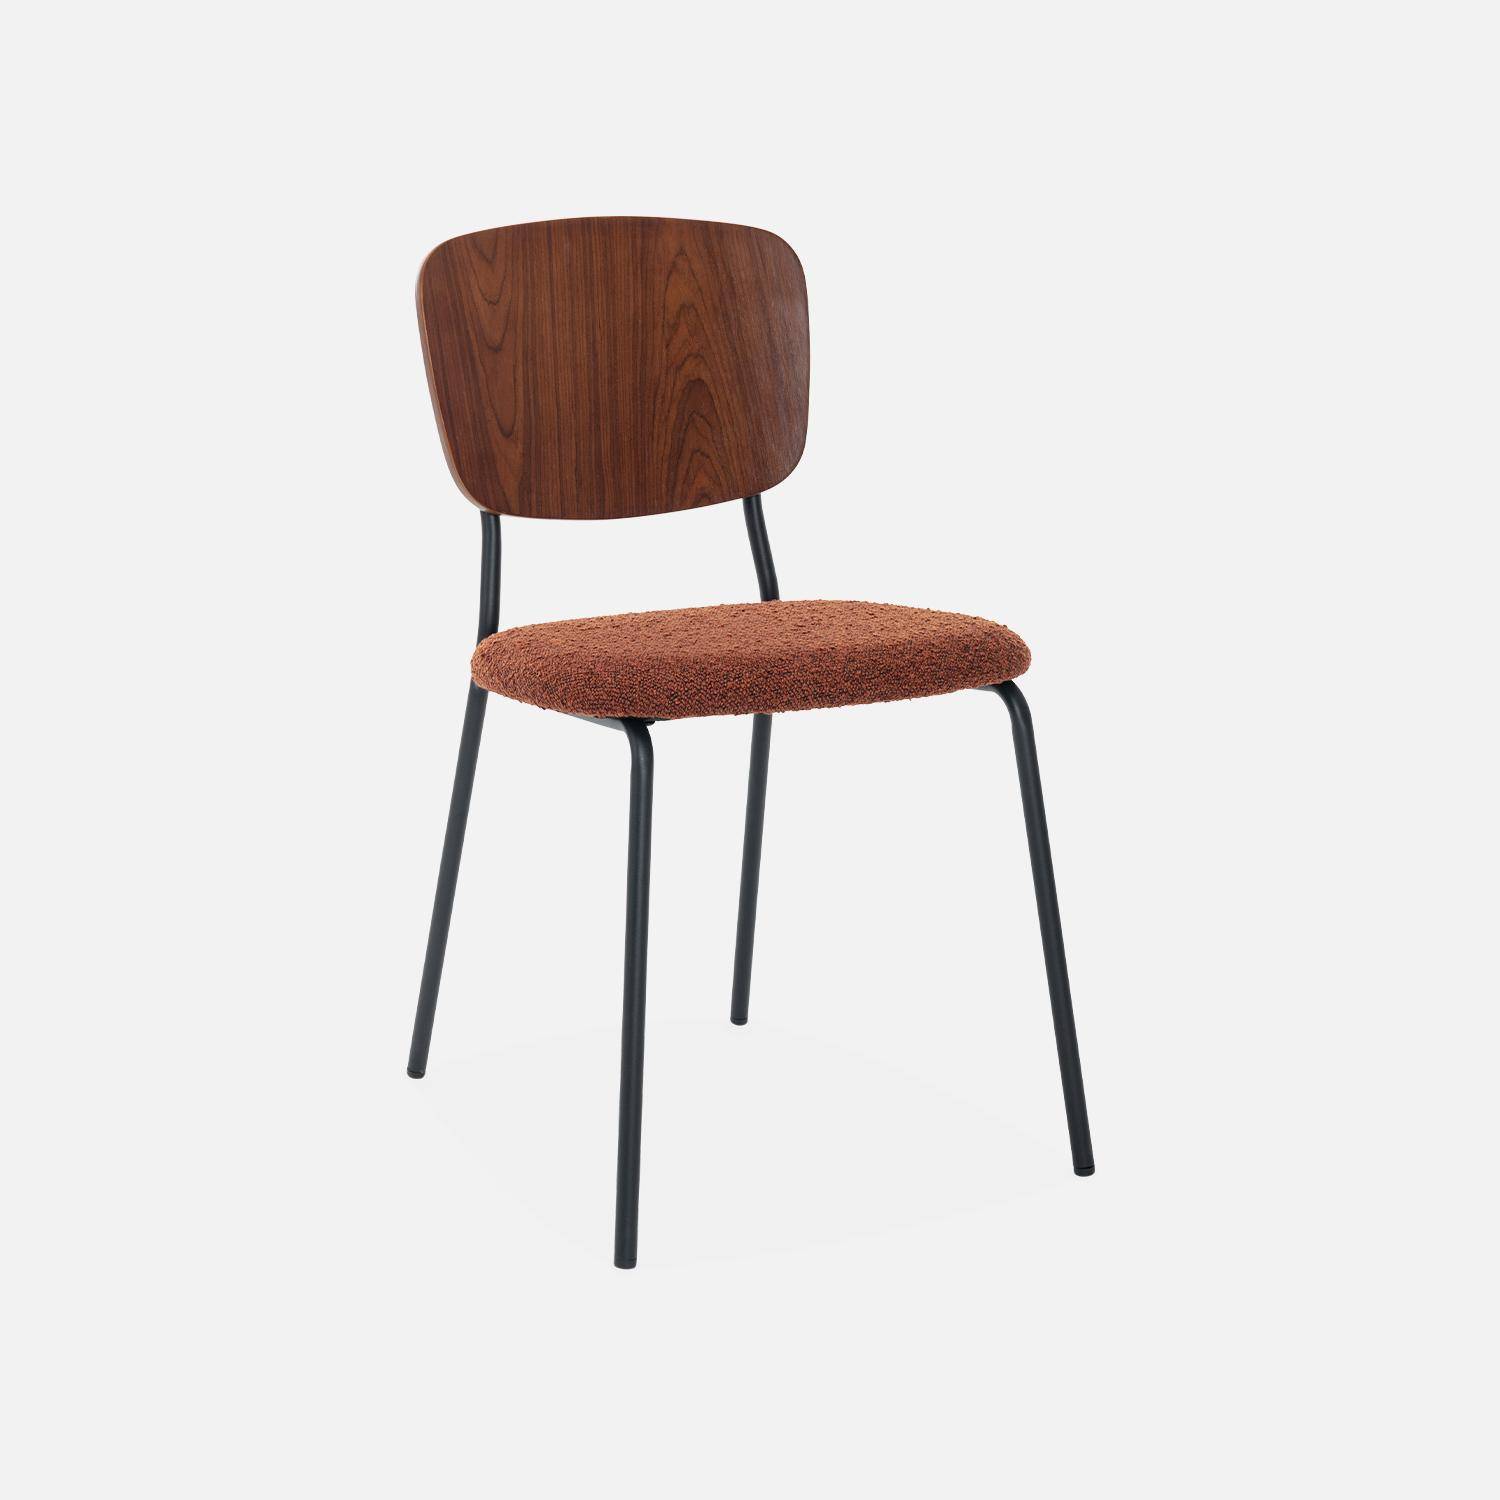 2er Set Stühle mit strukturiertem Bouclé-Sitz in terrakotta, Rückenlehne aus gebogenem Pappelholz, Beine aus mattschwarzem Metall Photo4